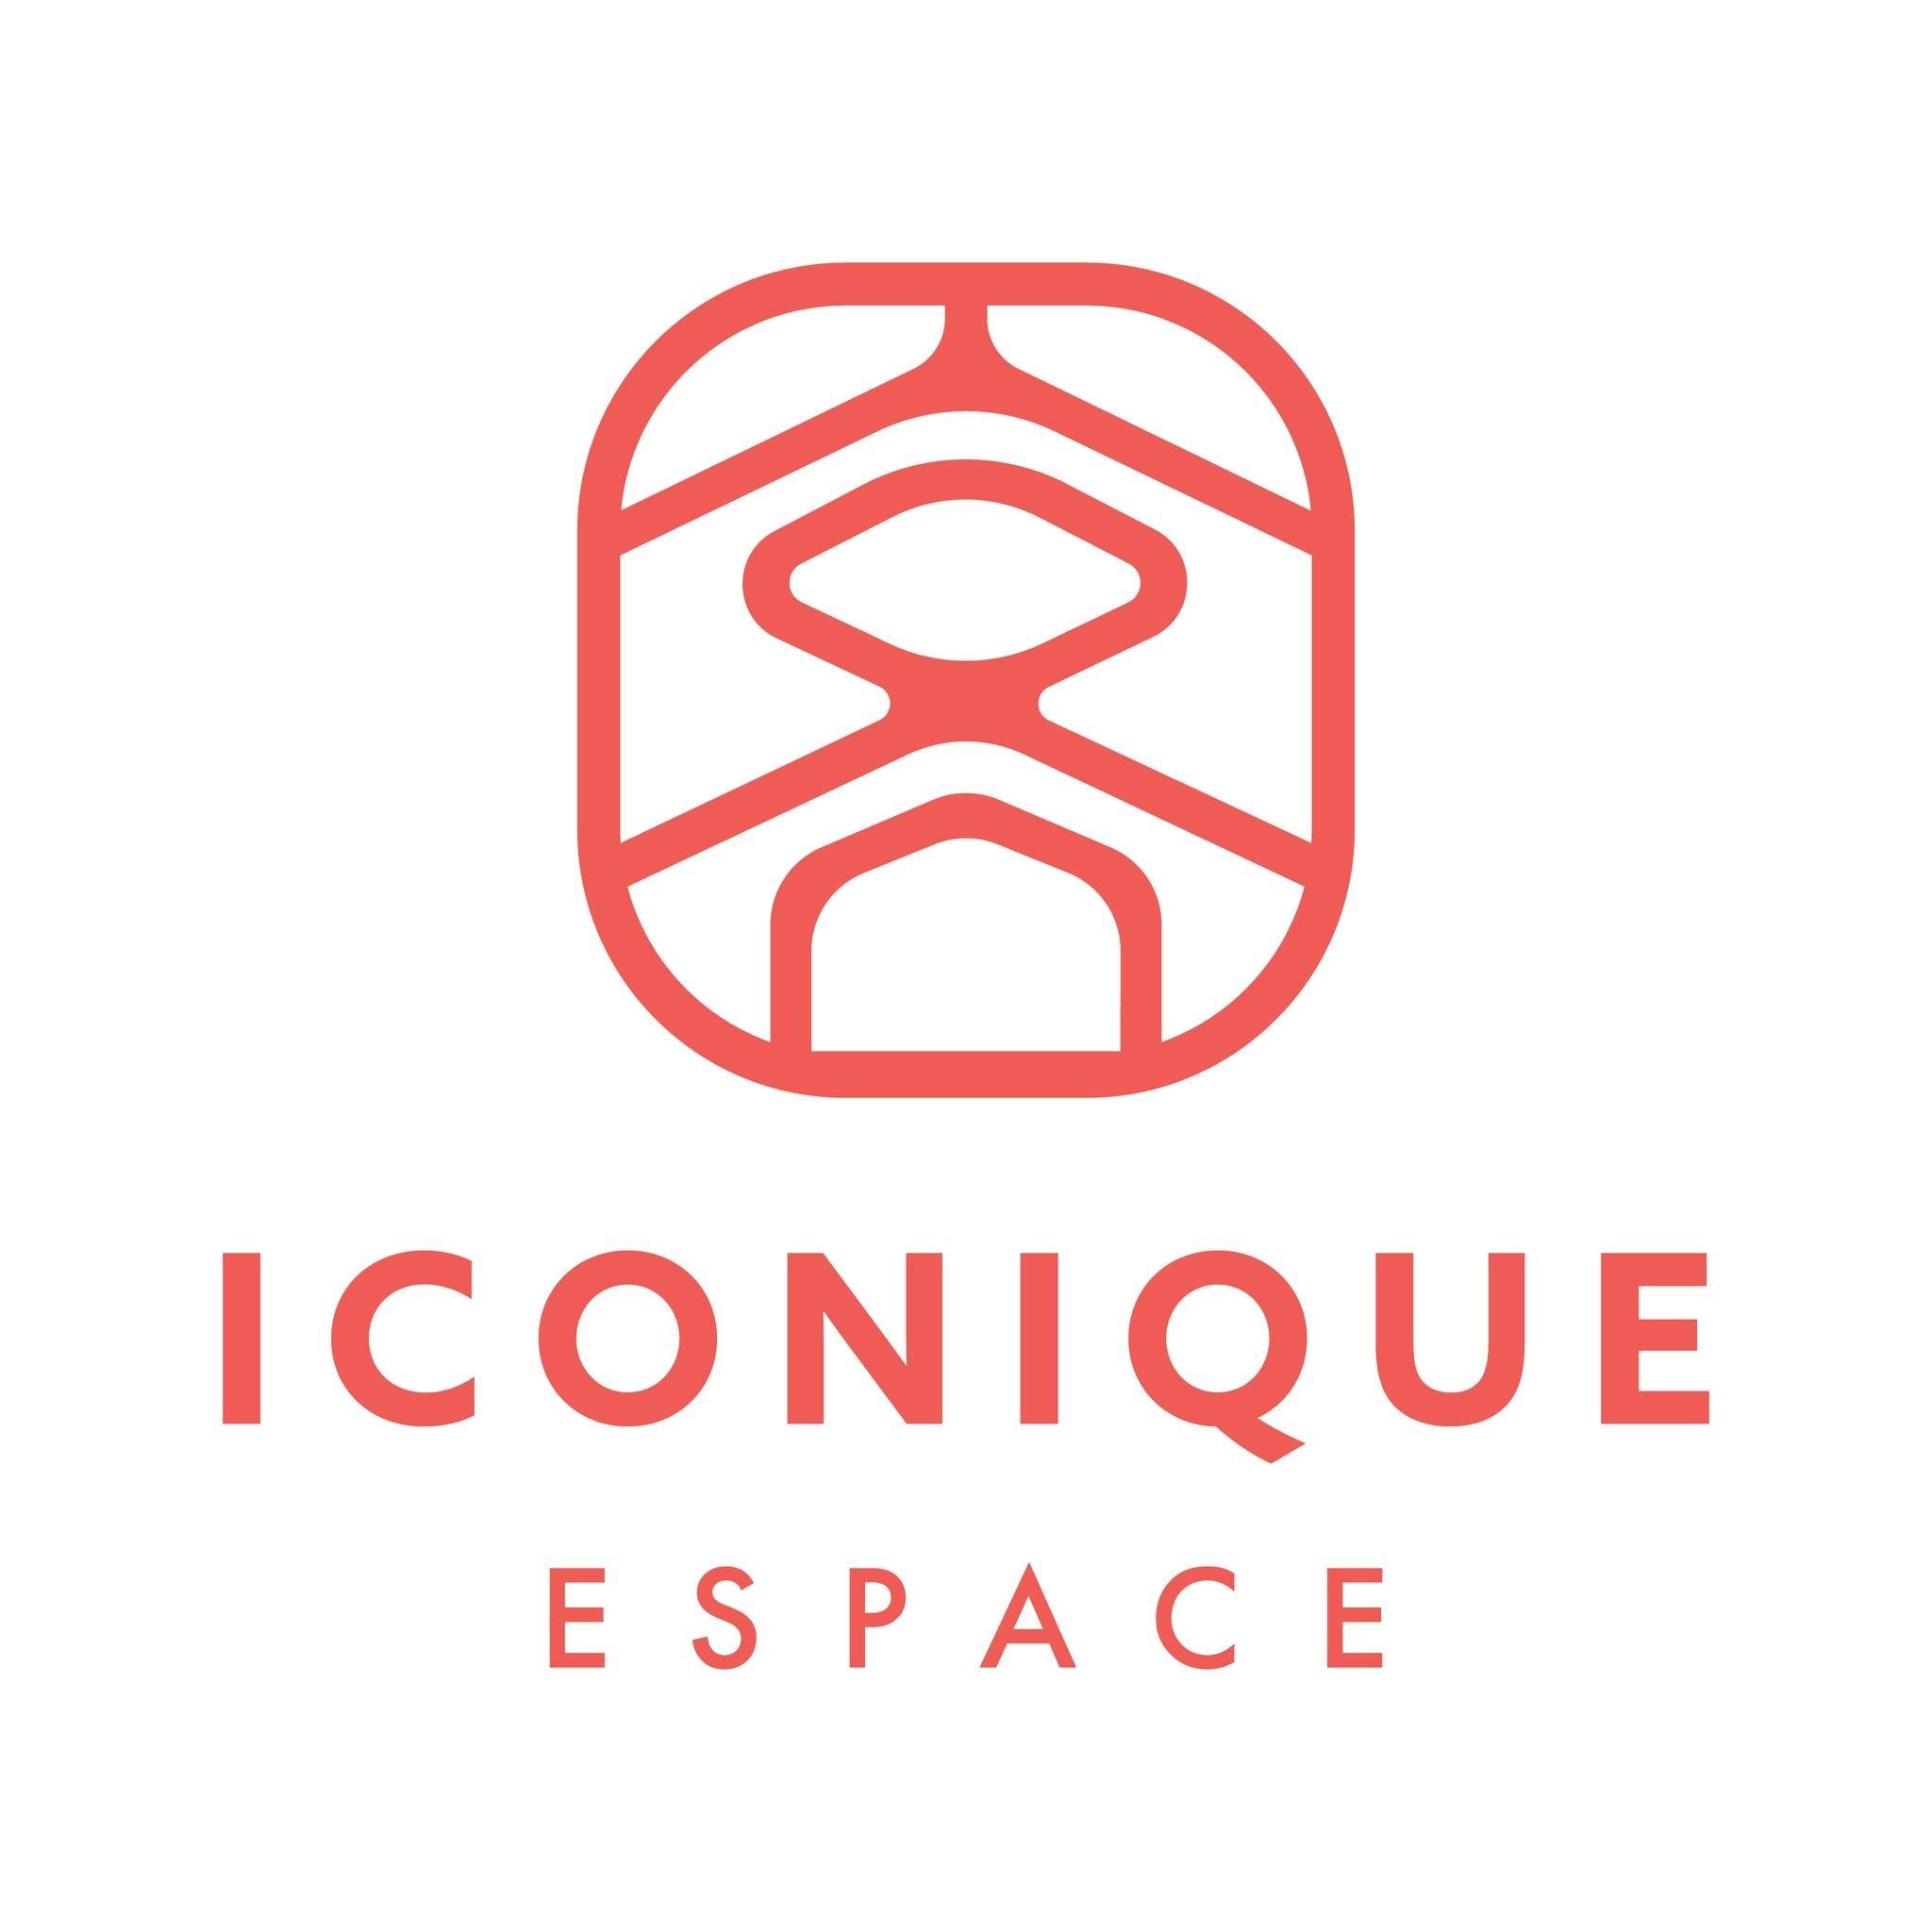 Iconique Espace